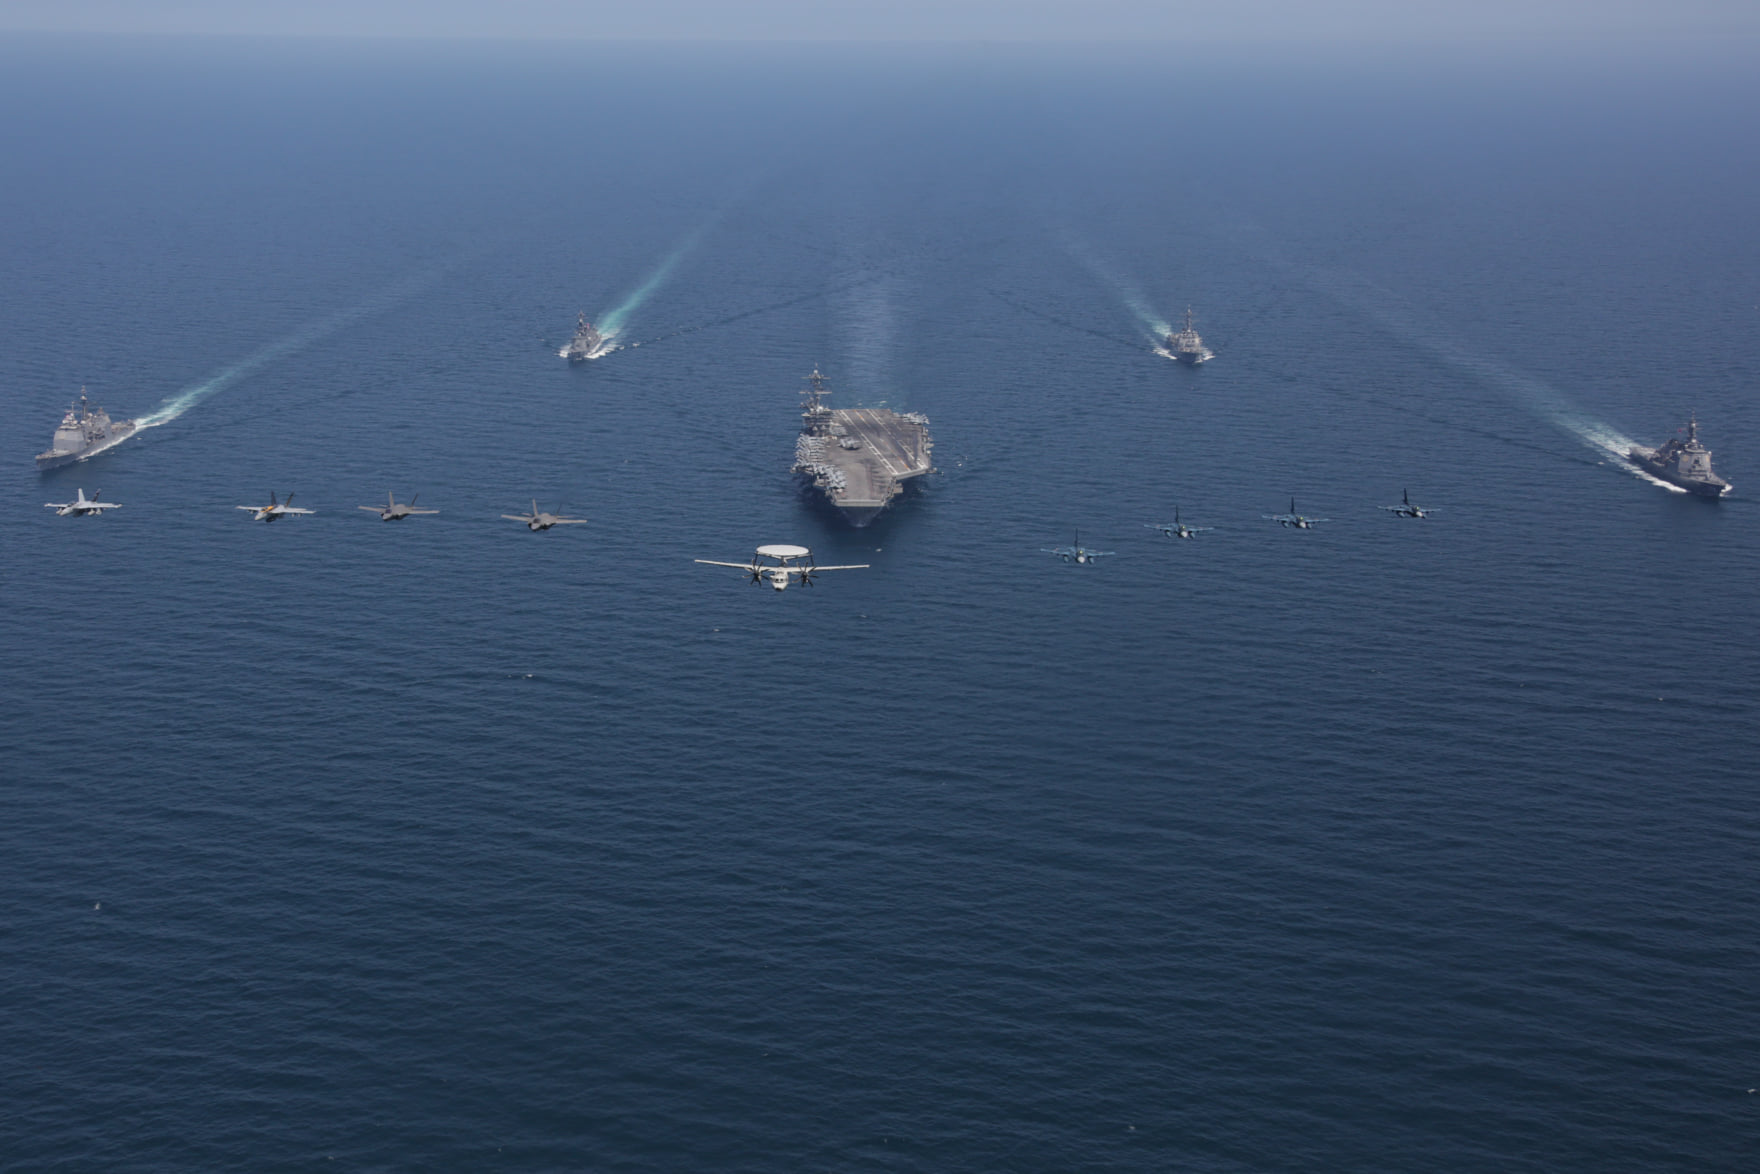 미 에이브러햄 링컨 항모 전단이 지난 12일 동해 공해상에서 일본 해상 자위대와 합동 훈련을 하는 모습 (출처: 미 7함대 페이스북)